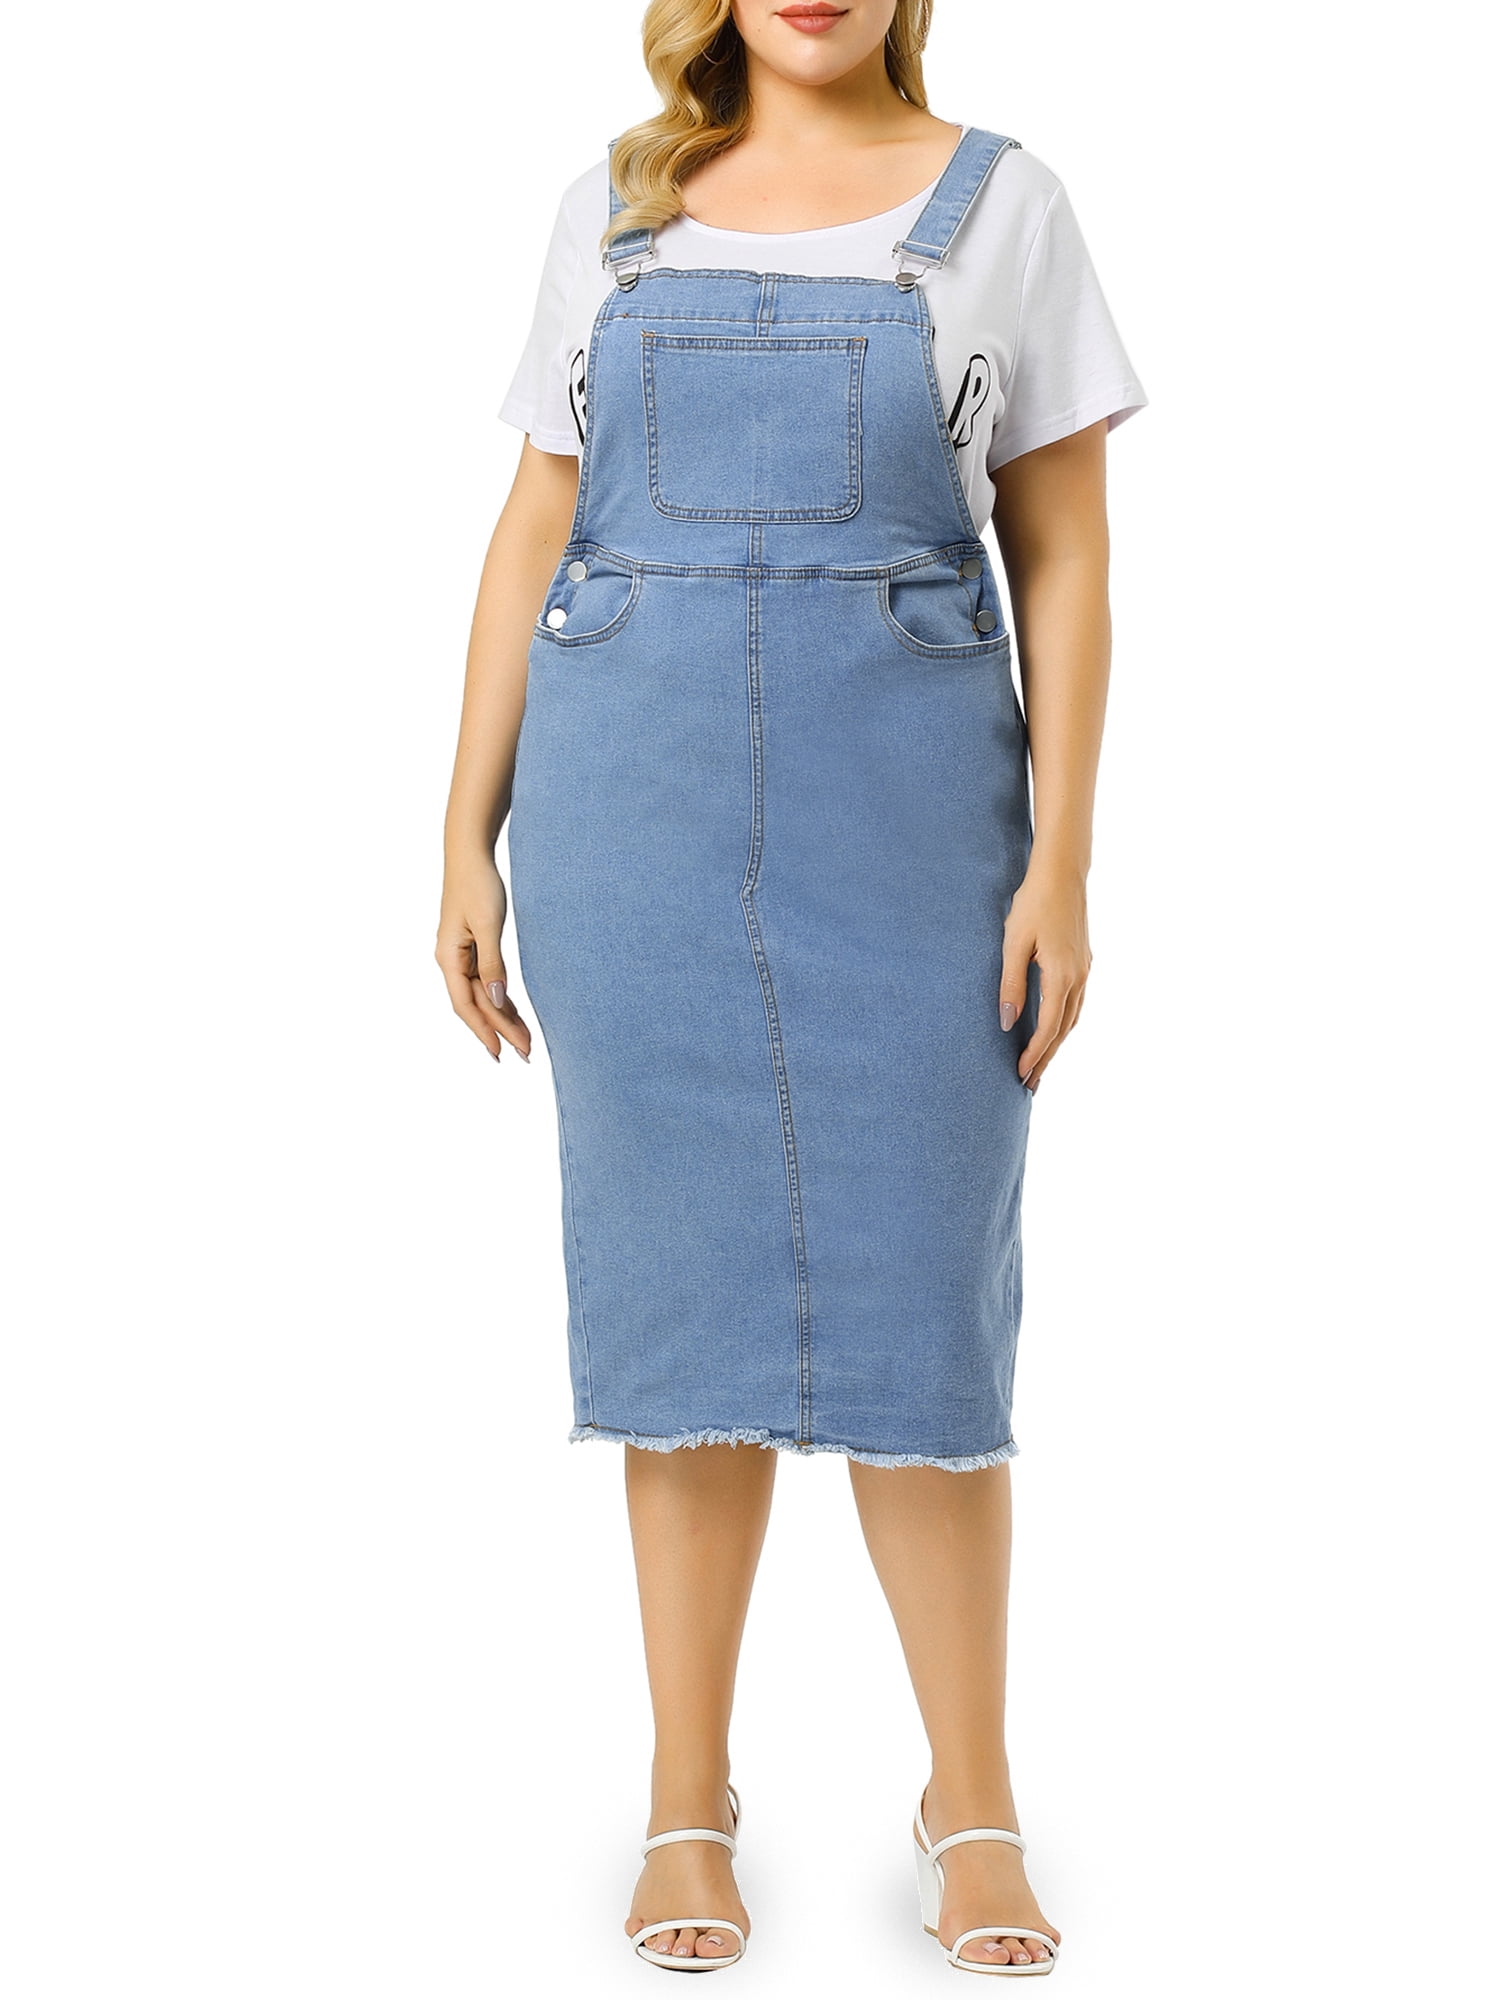 Unique Bargains Women's Plus Size Adjustable Suspender Skirt Denim Walmart.com